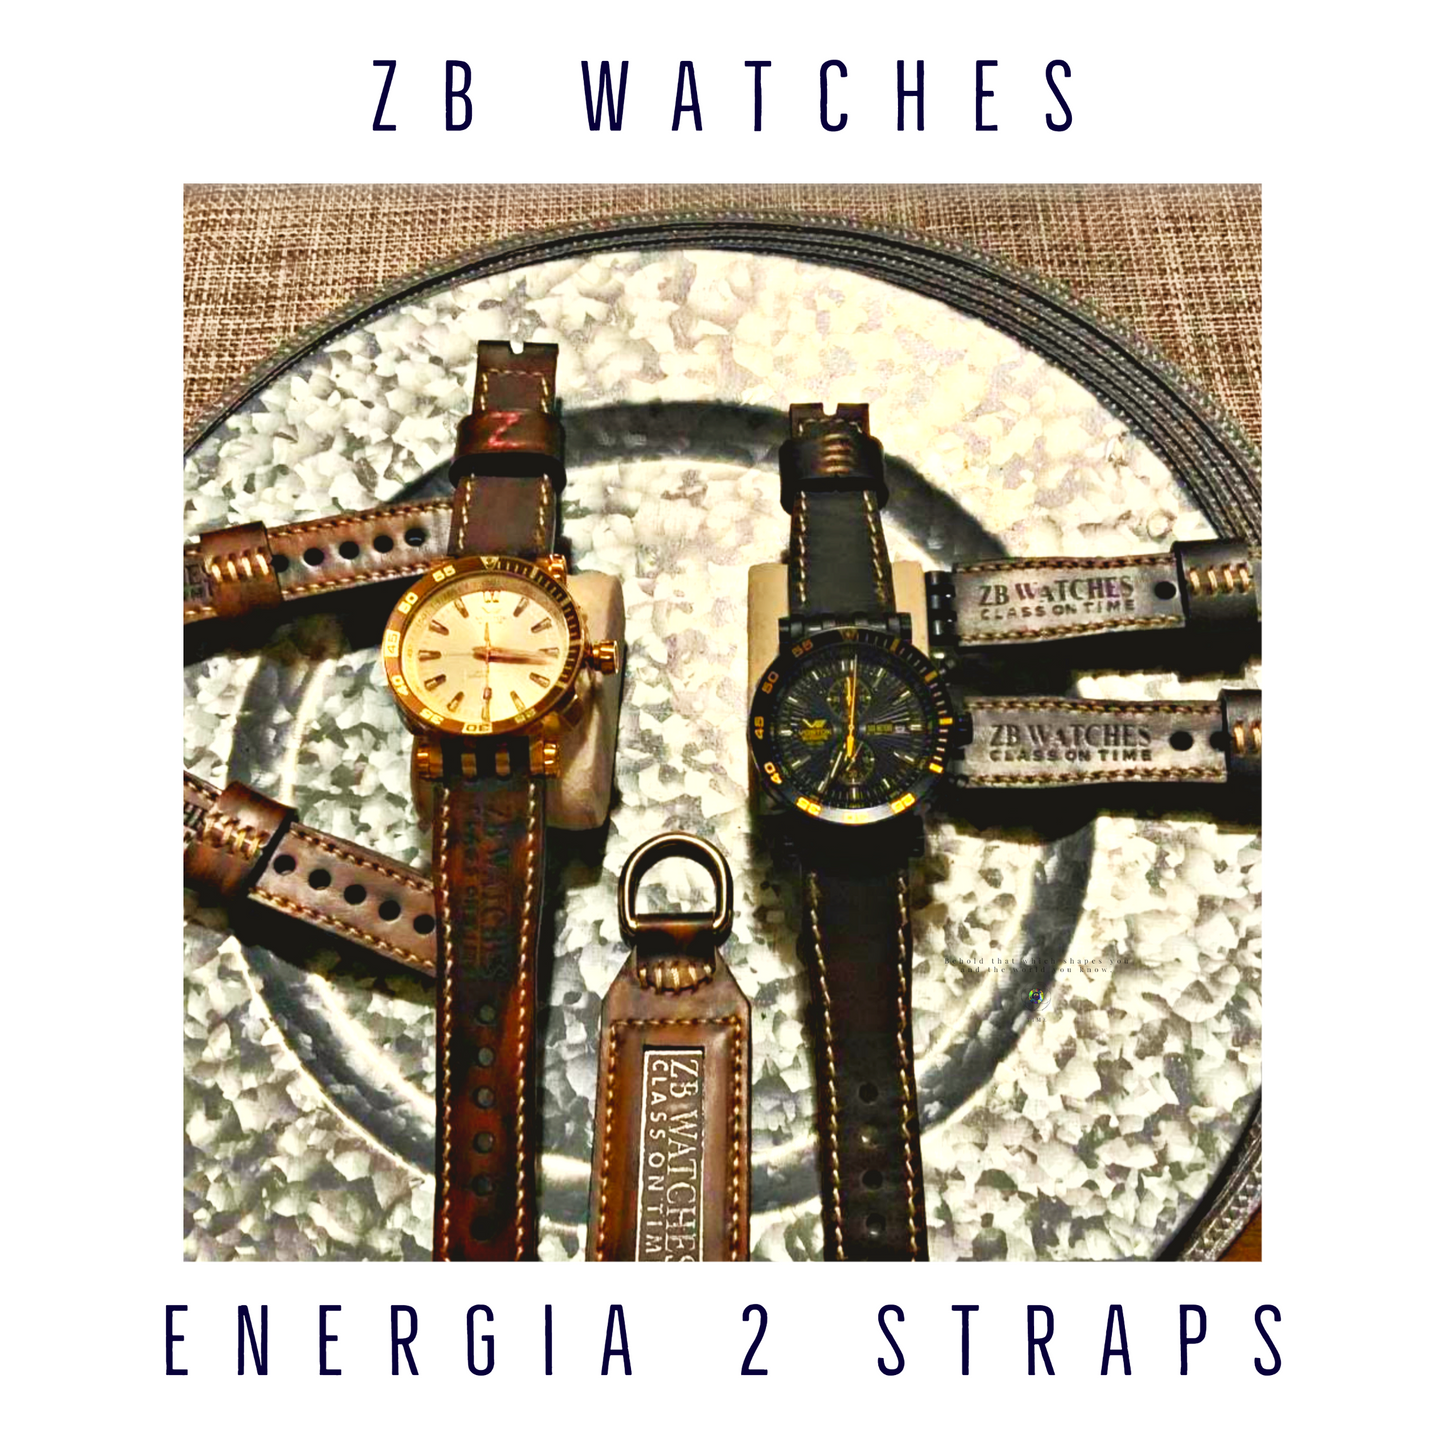 Correas de cuero de la marca ZB Watches para relojes Vostok Europe Energia.